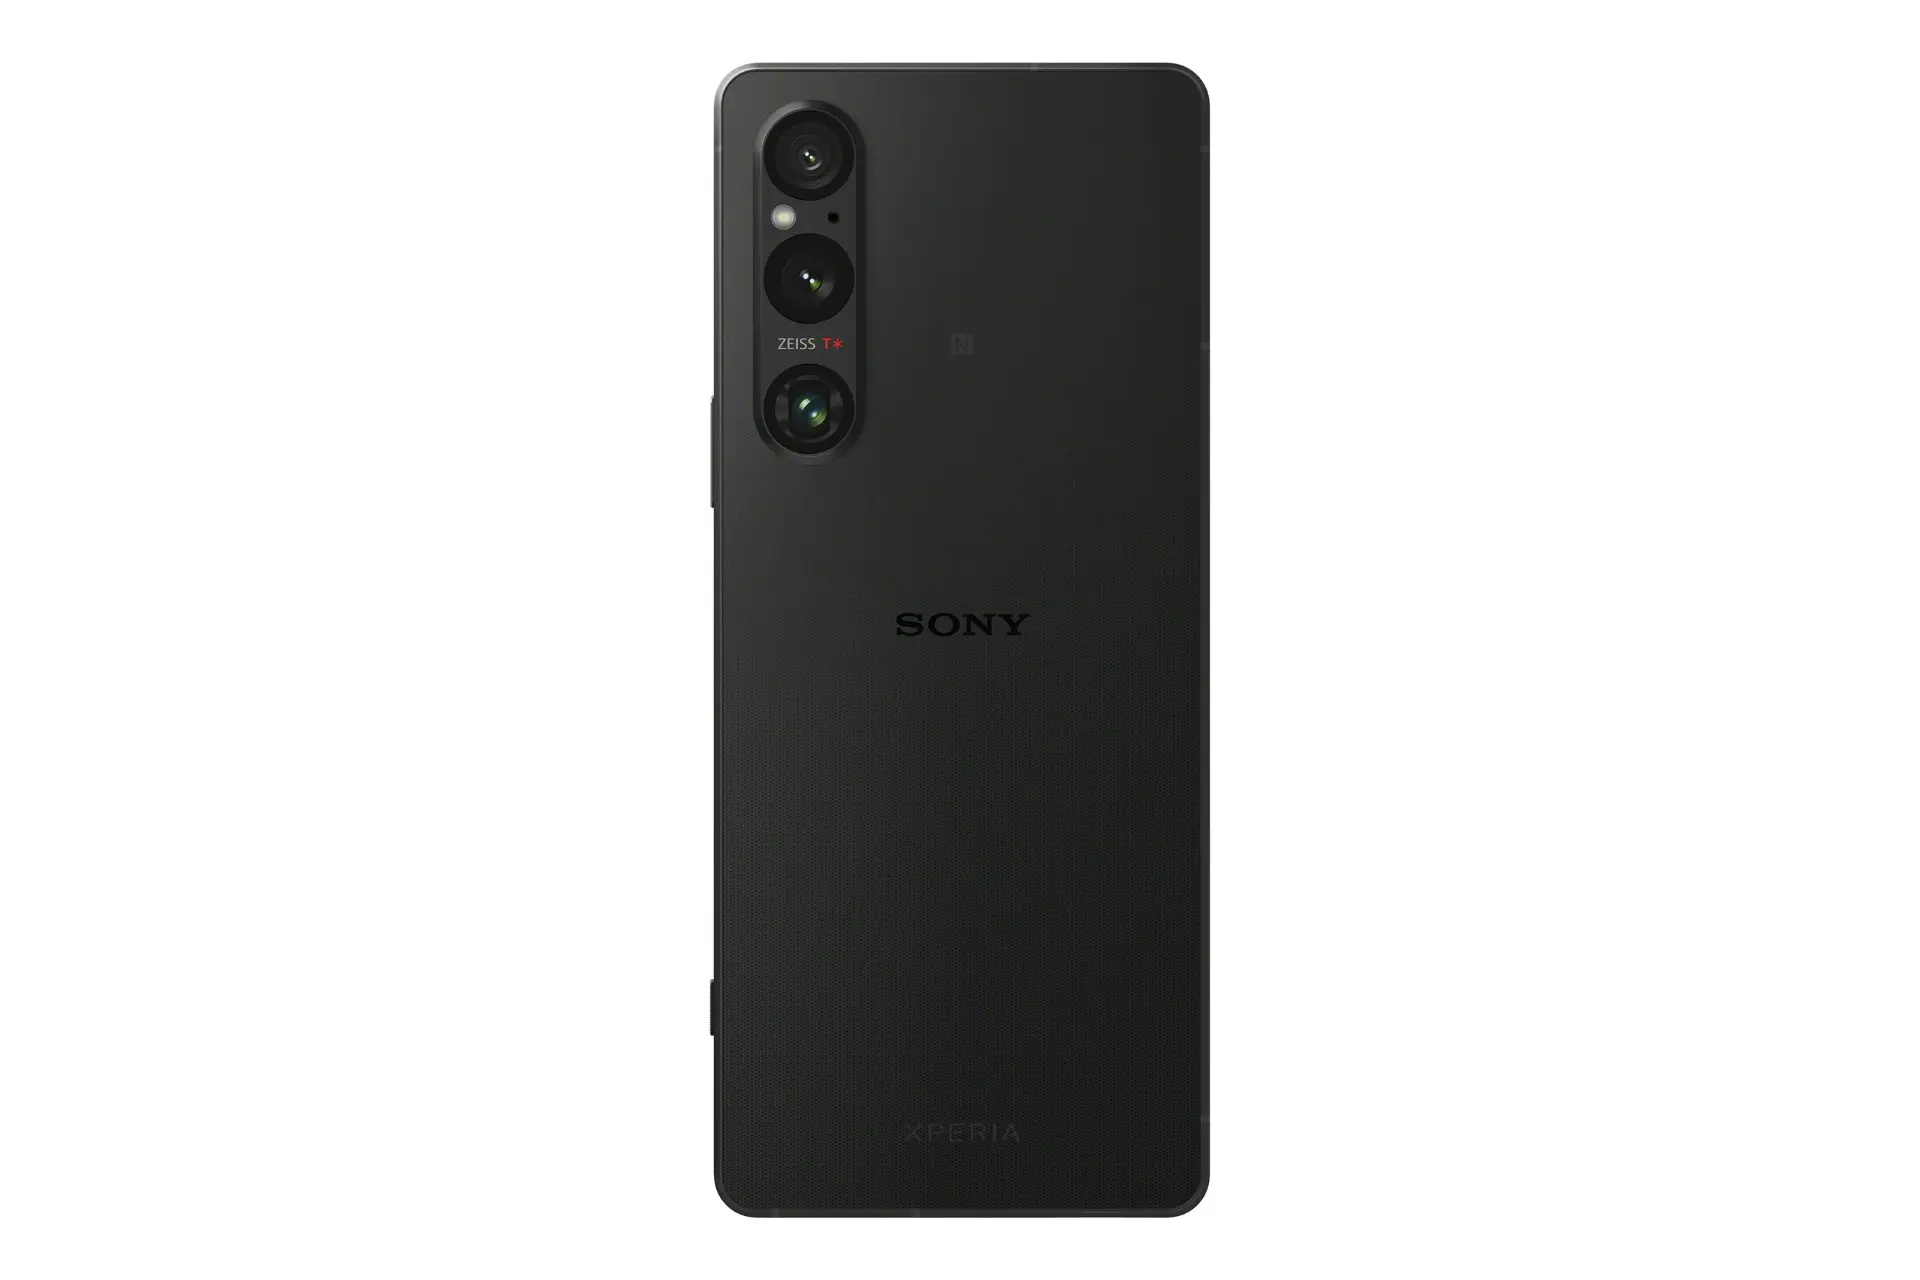 نمای پنل پشت گوشی اکسپریا 1 مارک 5 سونی / Sony Xperia 1 V با نمایش لوگو و دوربین پنل پشت رنگ مشکی